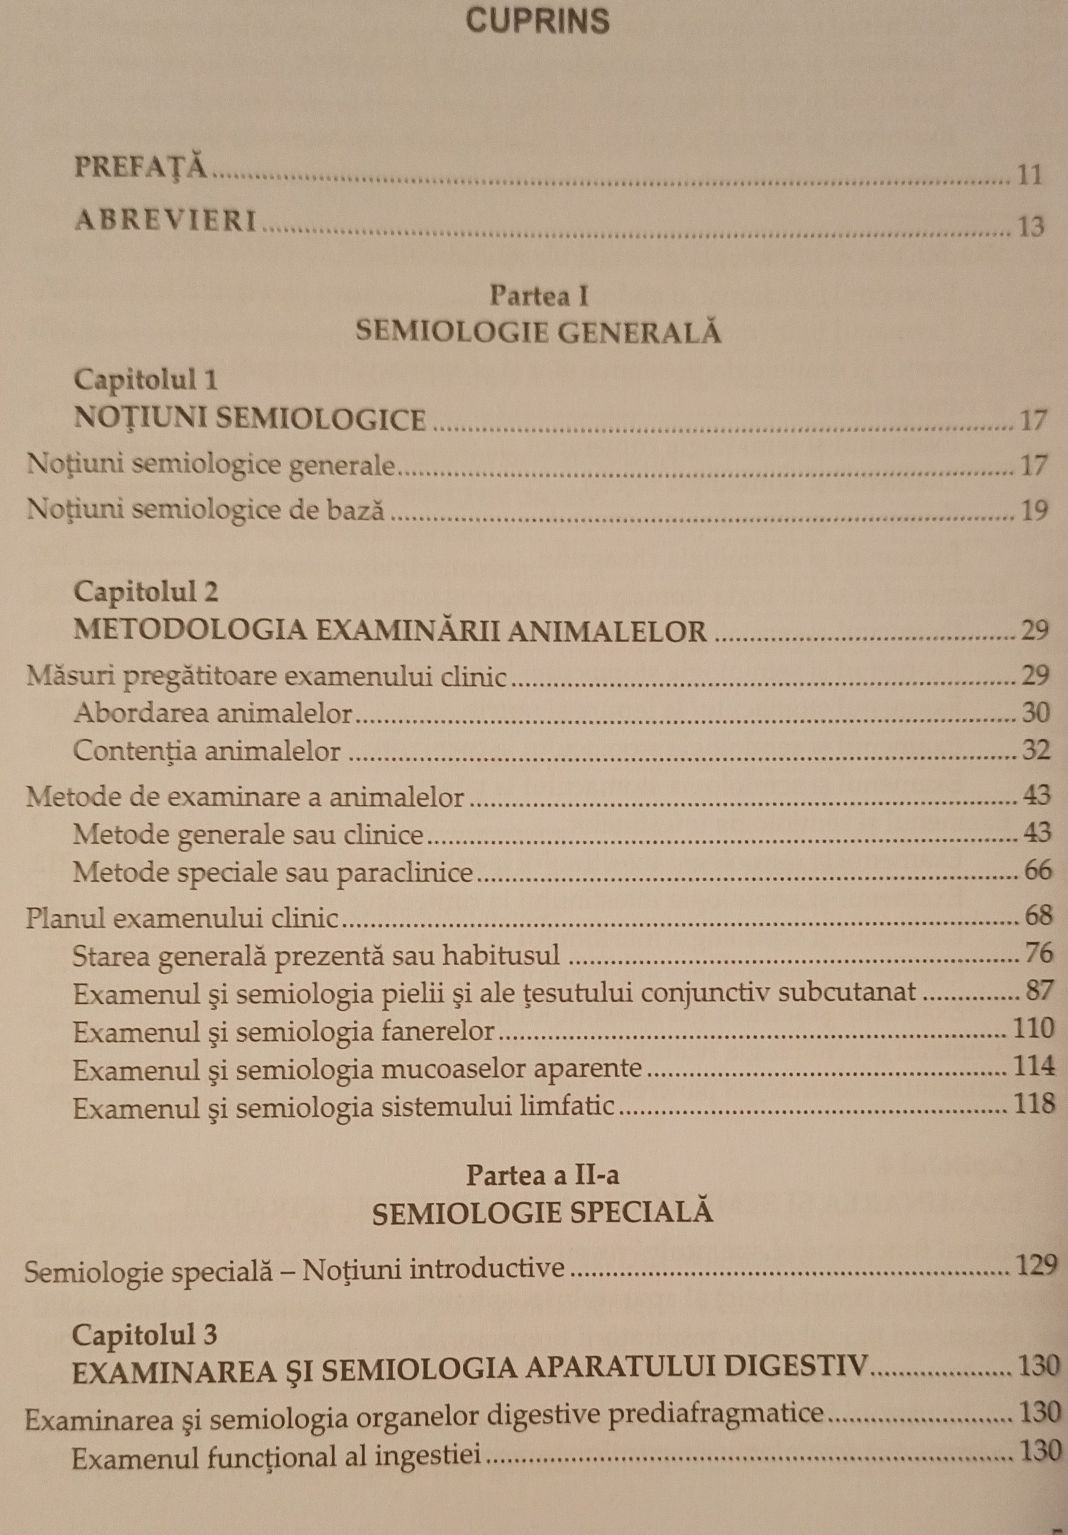 Tratat de semiologie medicală veterinară- Ionel Papuc